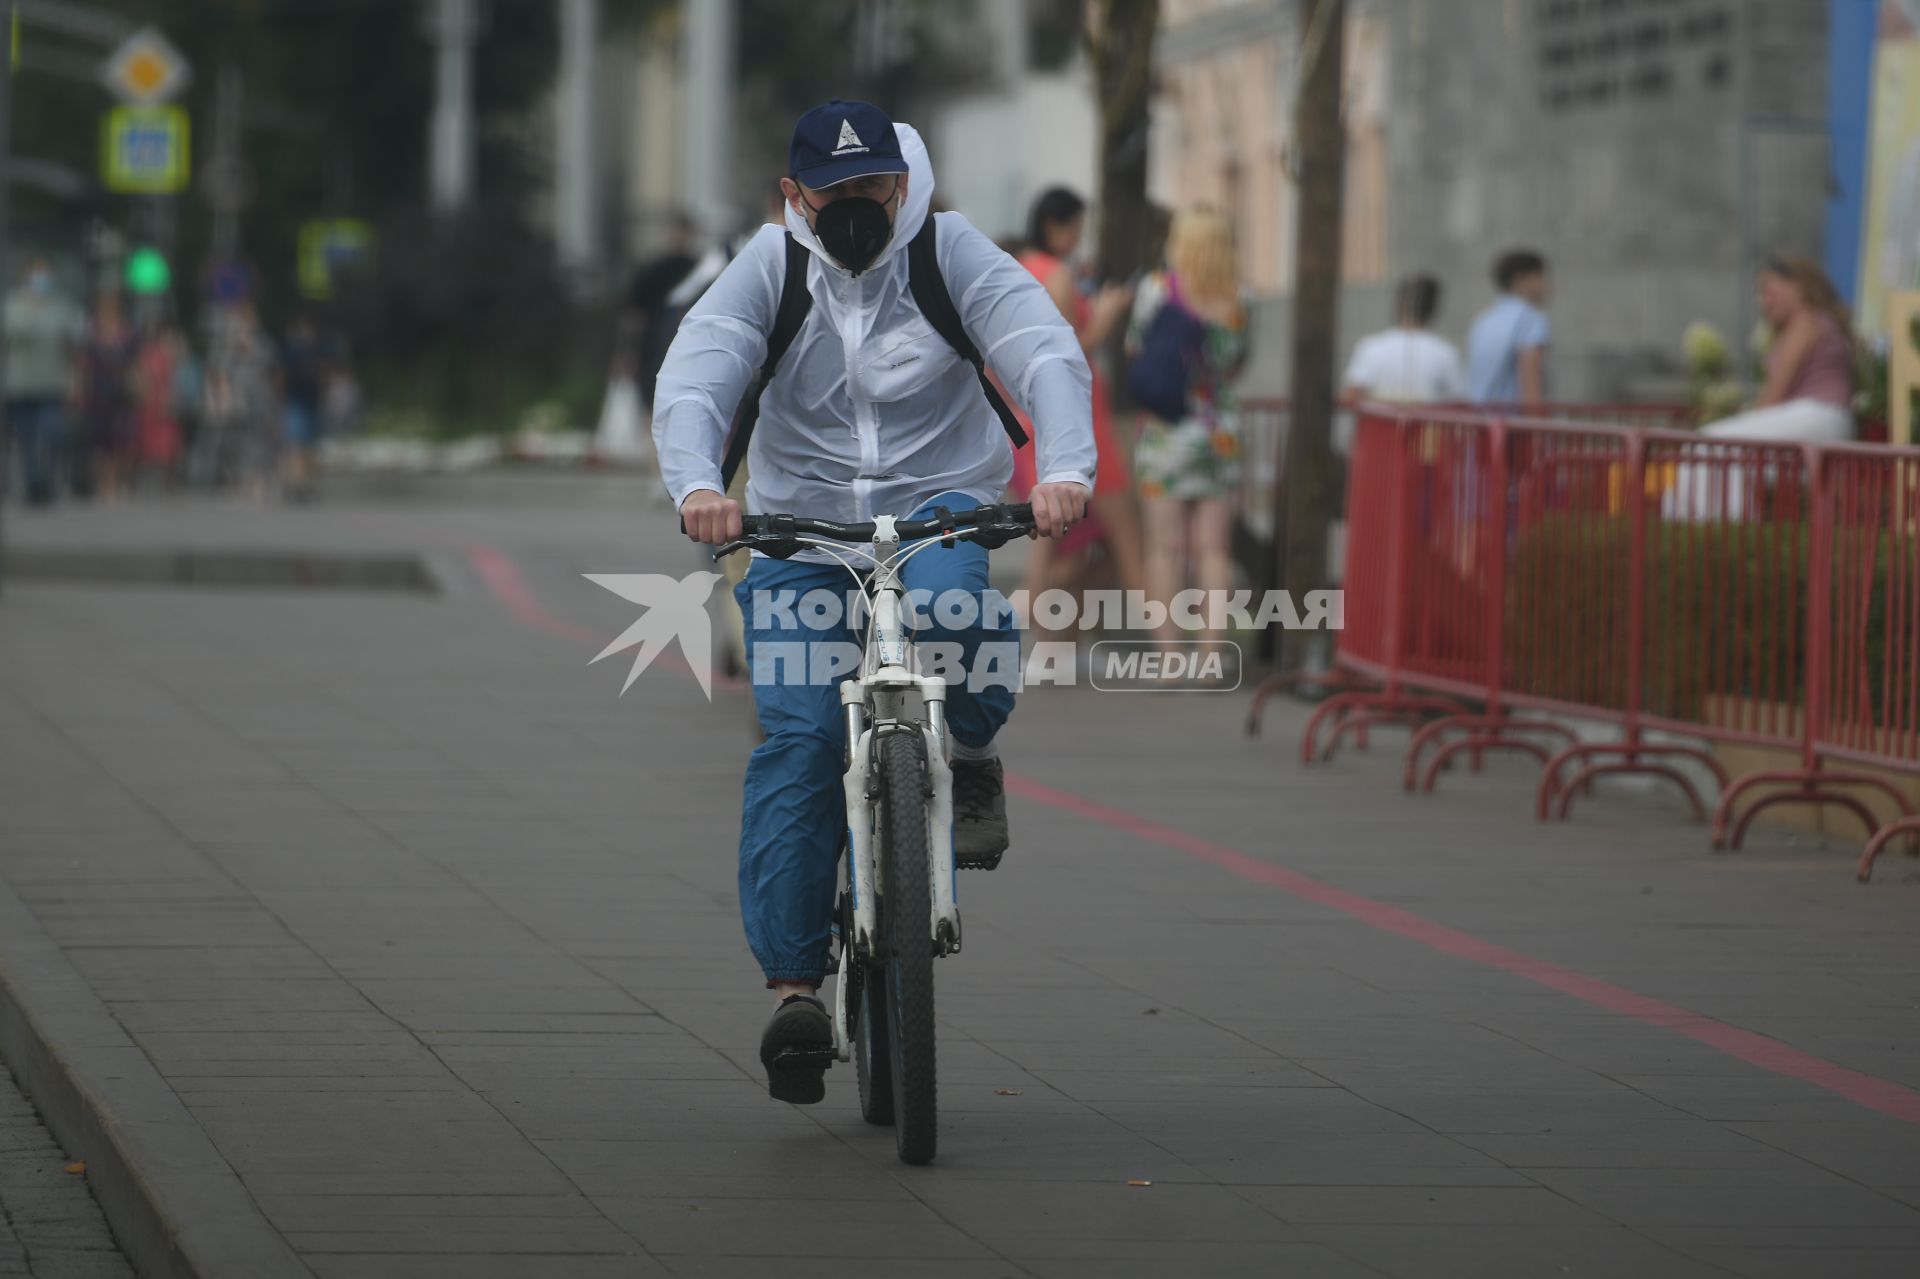 Екатеринбург. Мужчина в респираторе едет на велосипеде